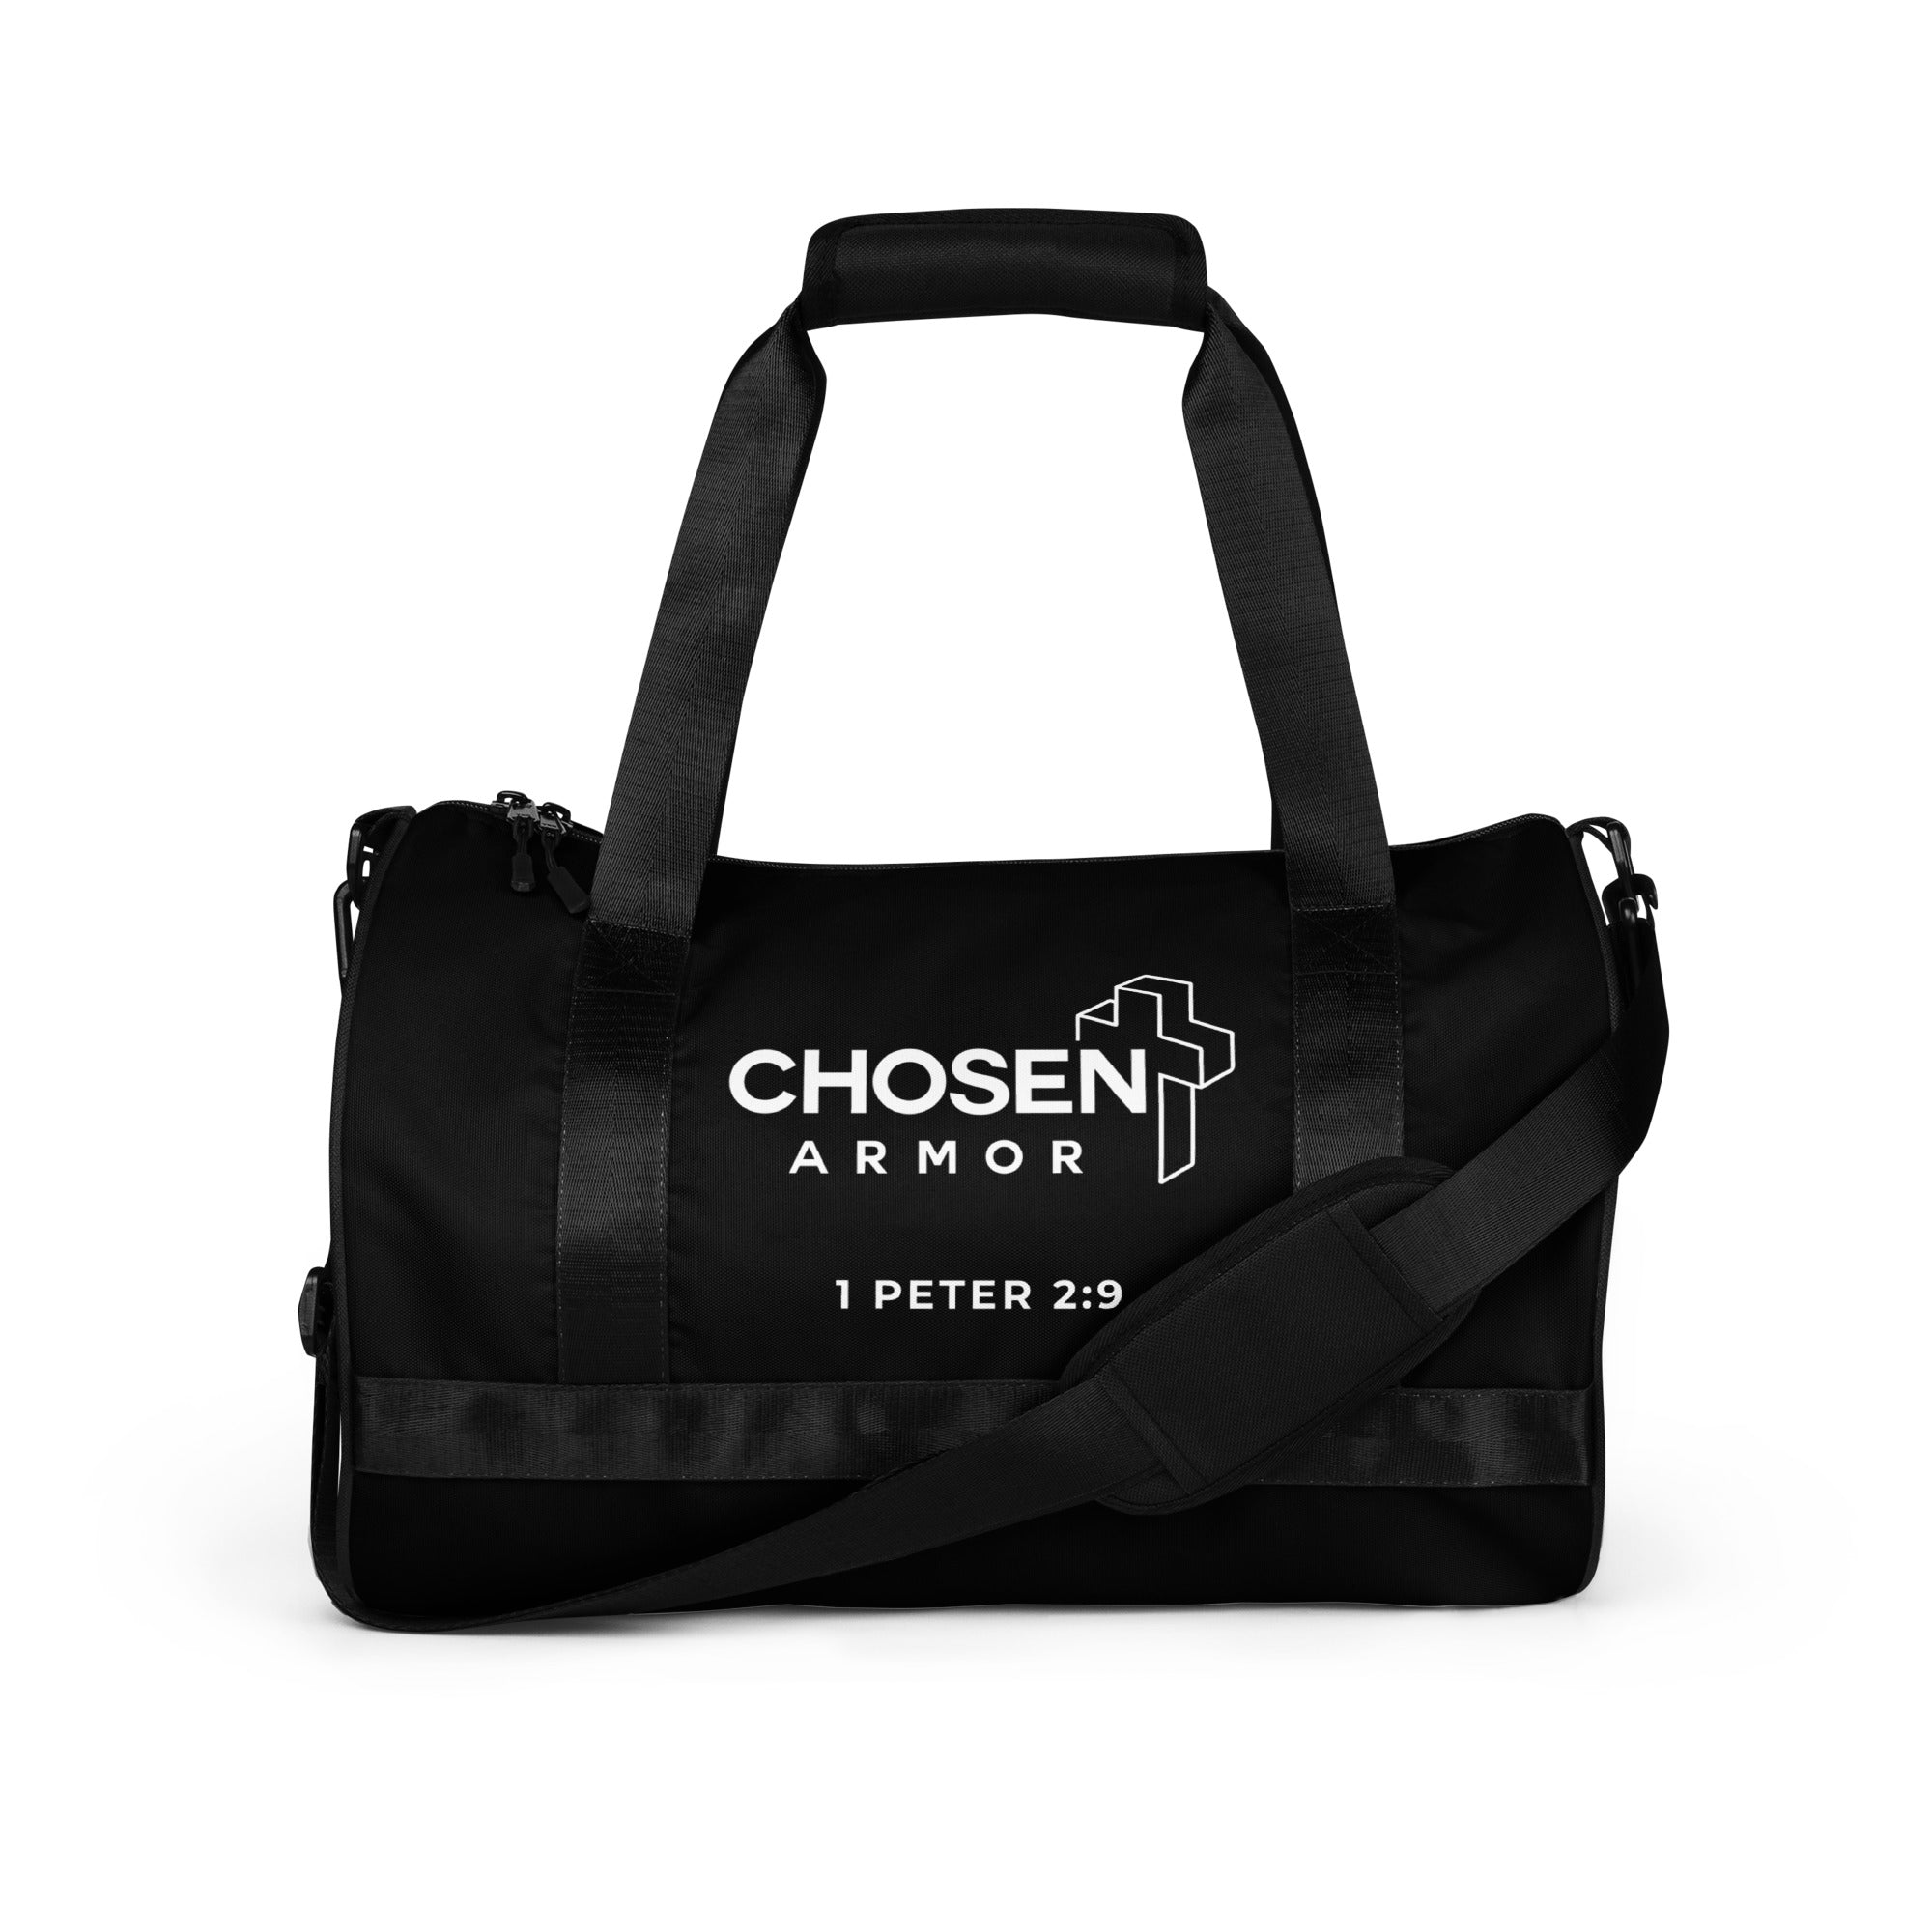 Chosen Armor | Gym Bag